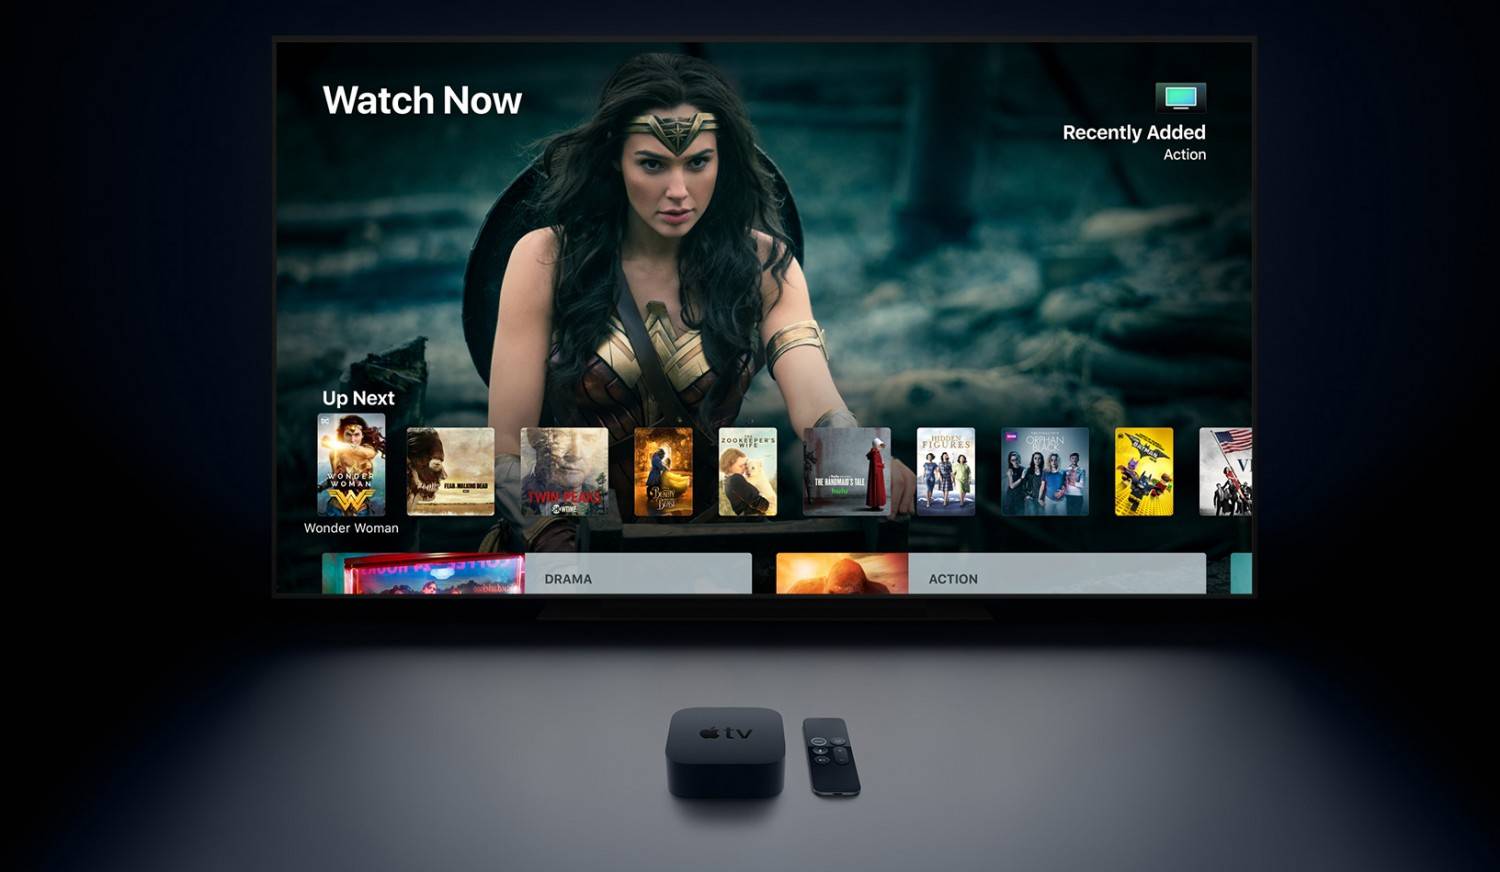 Heimkino Ab morgen: Neue Streaming-Box Apple TV unterstützt 4K und HDR  - News, Bild 1